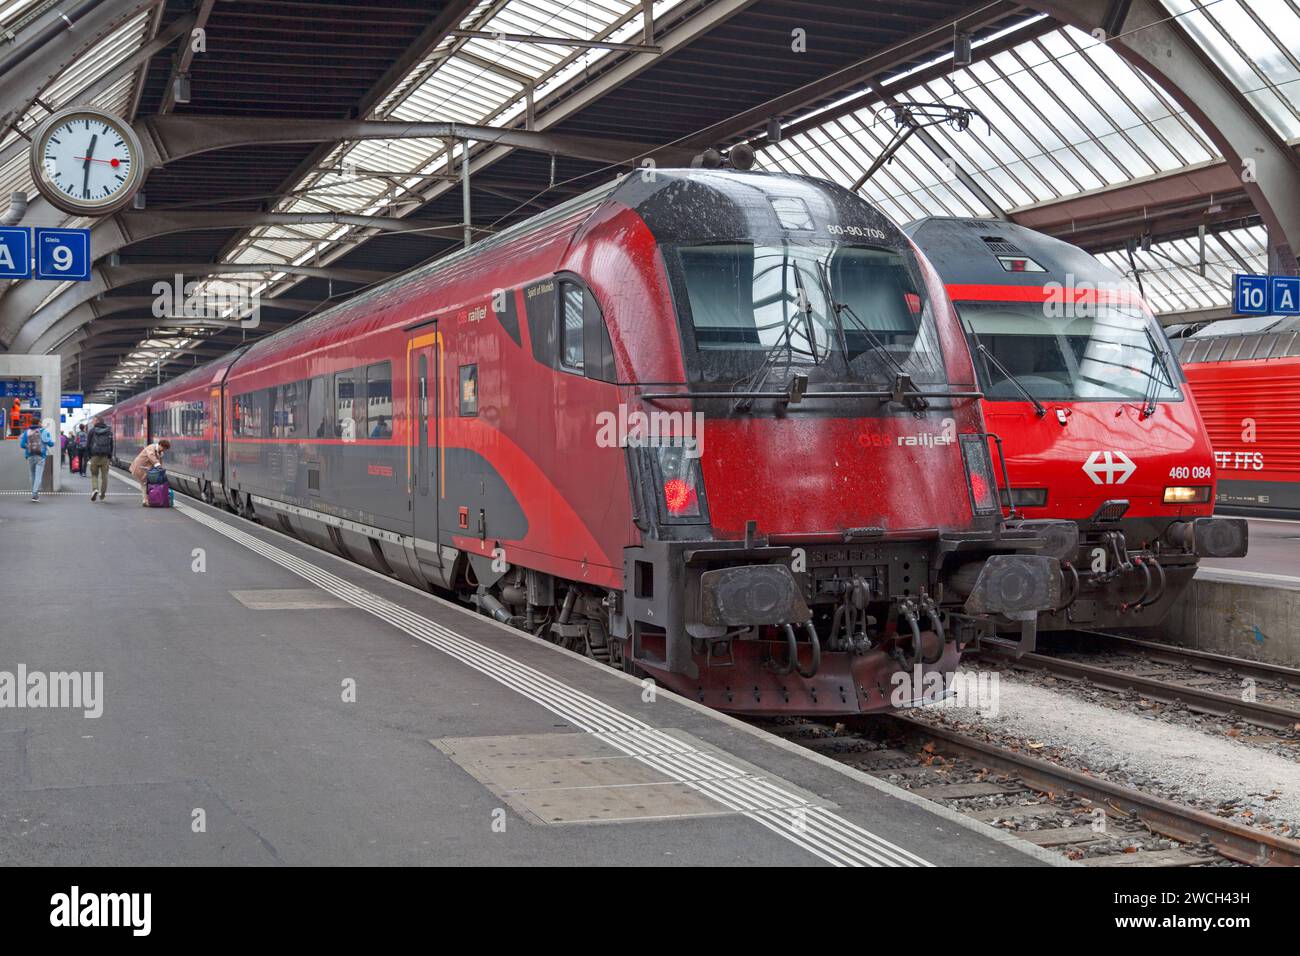 Zurich, Switzerland - June 13 2018: The Railjet, a high-speed train of the Austrian Federal Railways (ÖBB) in Zürich HB train station. Stock Photo